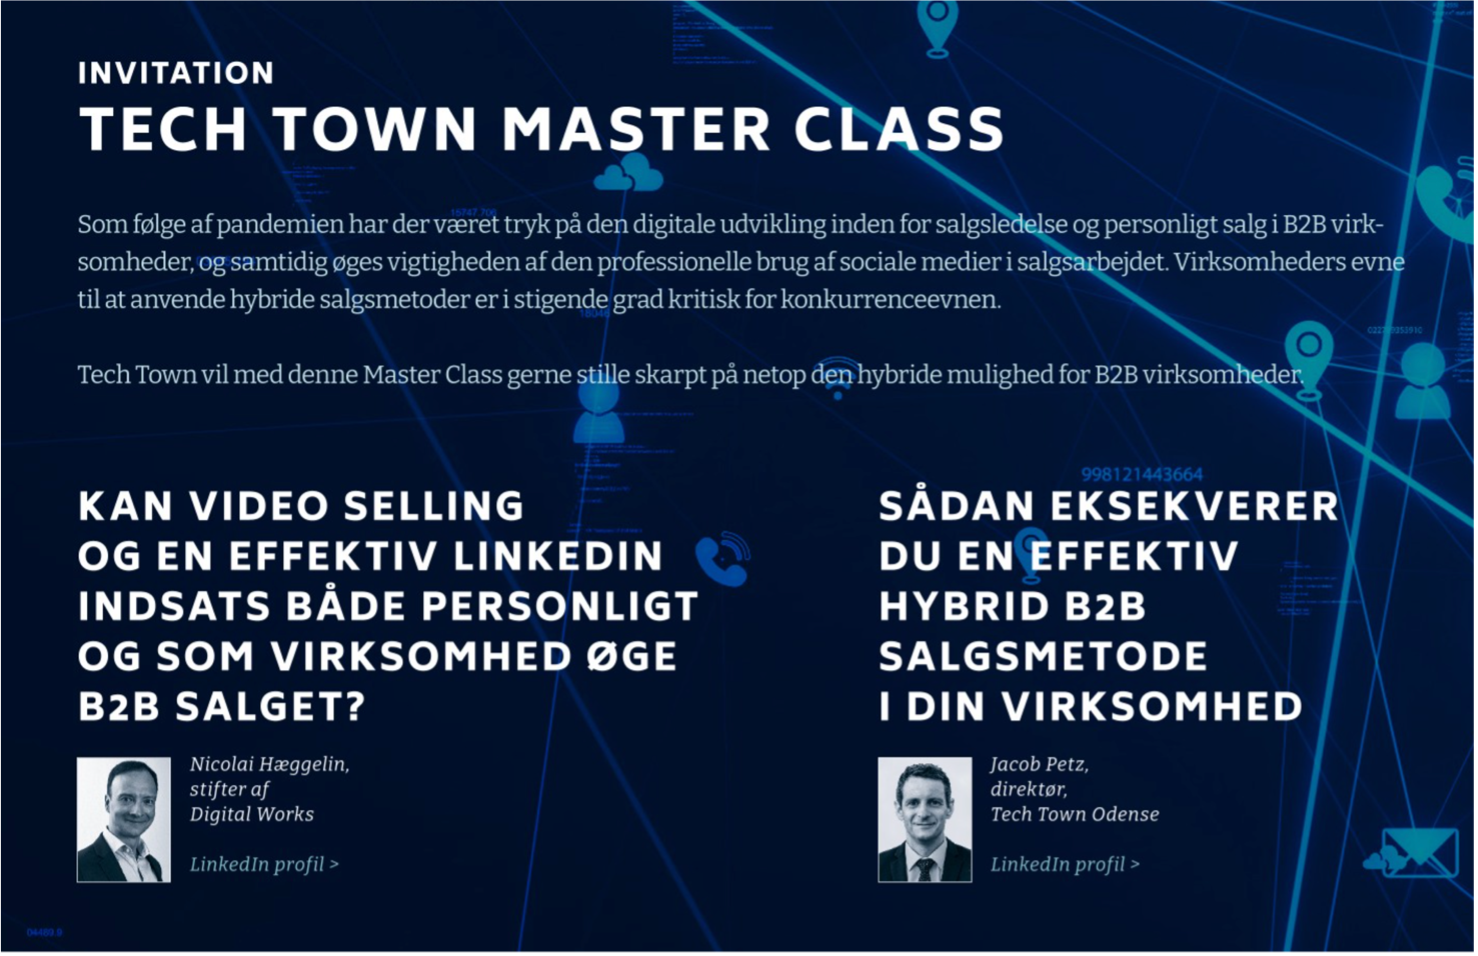 Ses vi til vores første Master Class i Tech Town Odense?